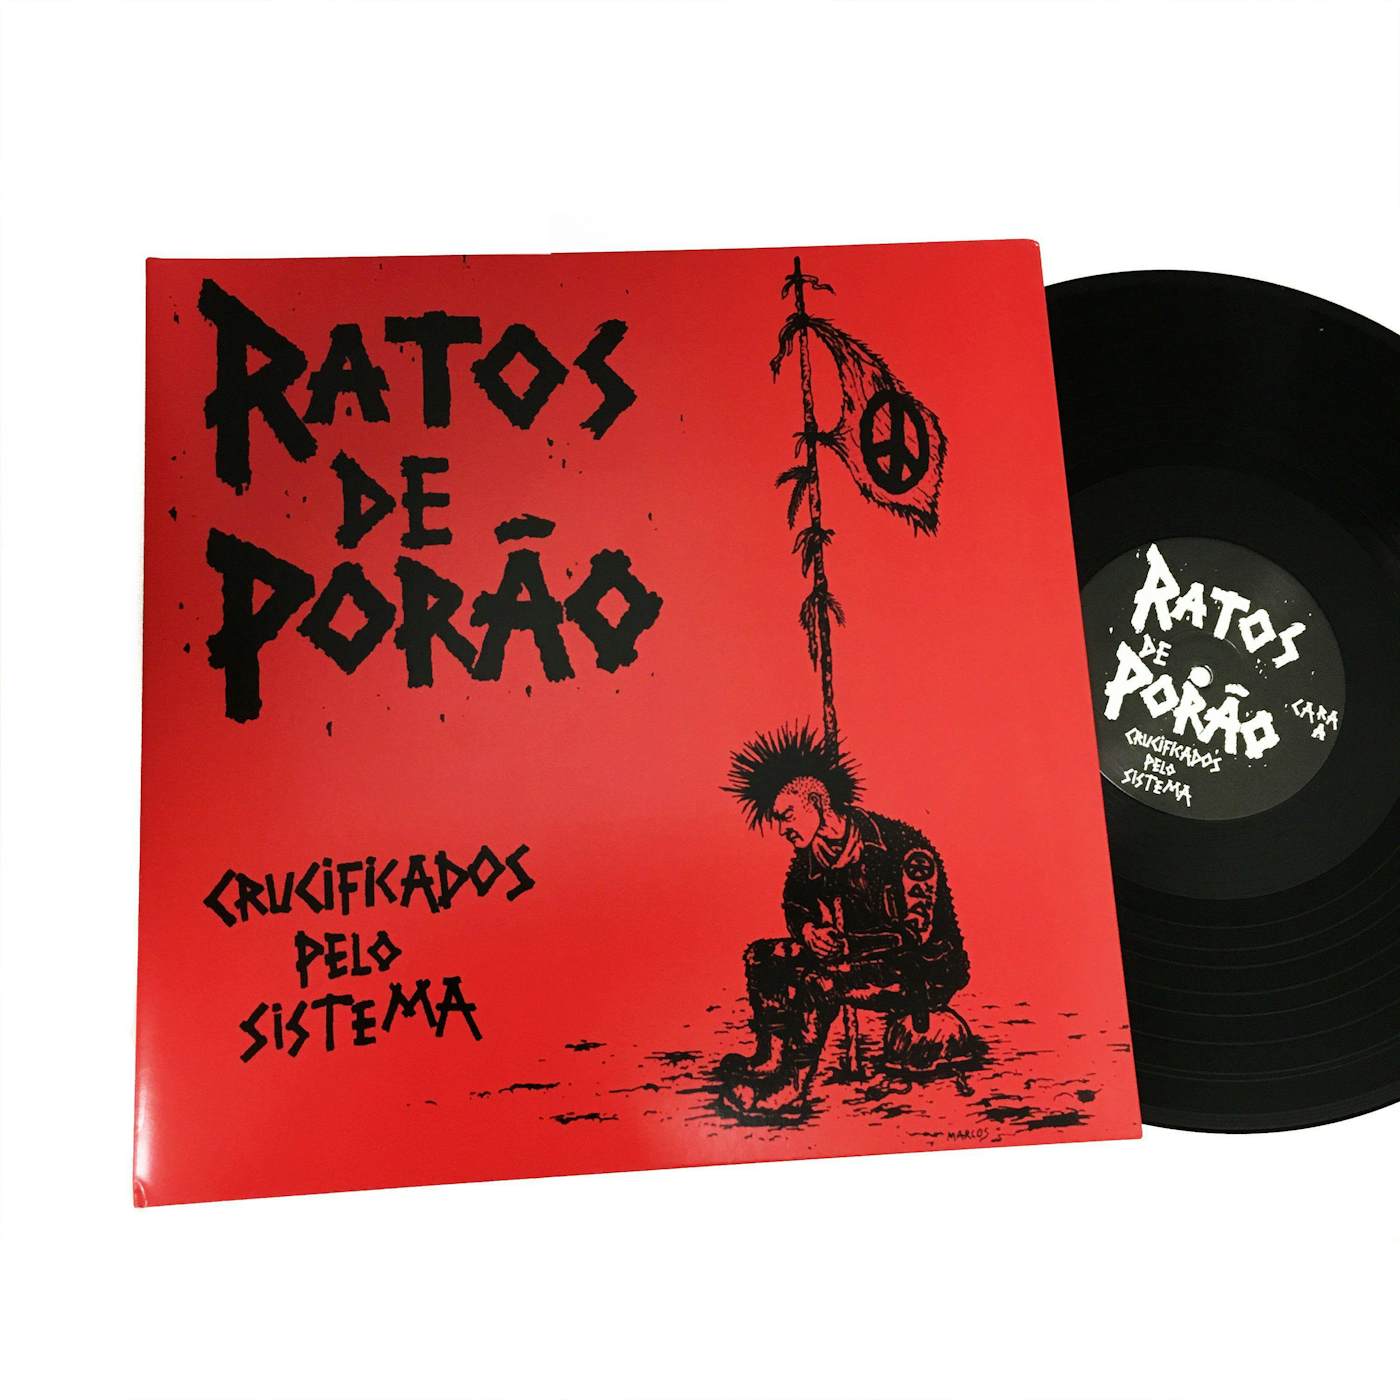 Ratos De Porão Crucificados Pelo Sistema Vinyl Record